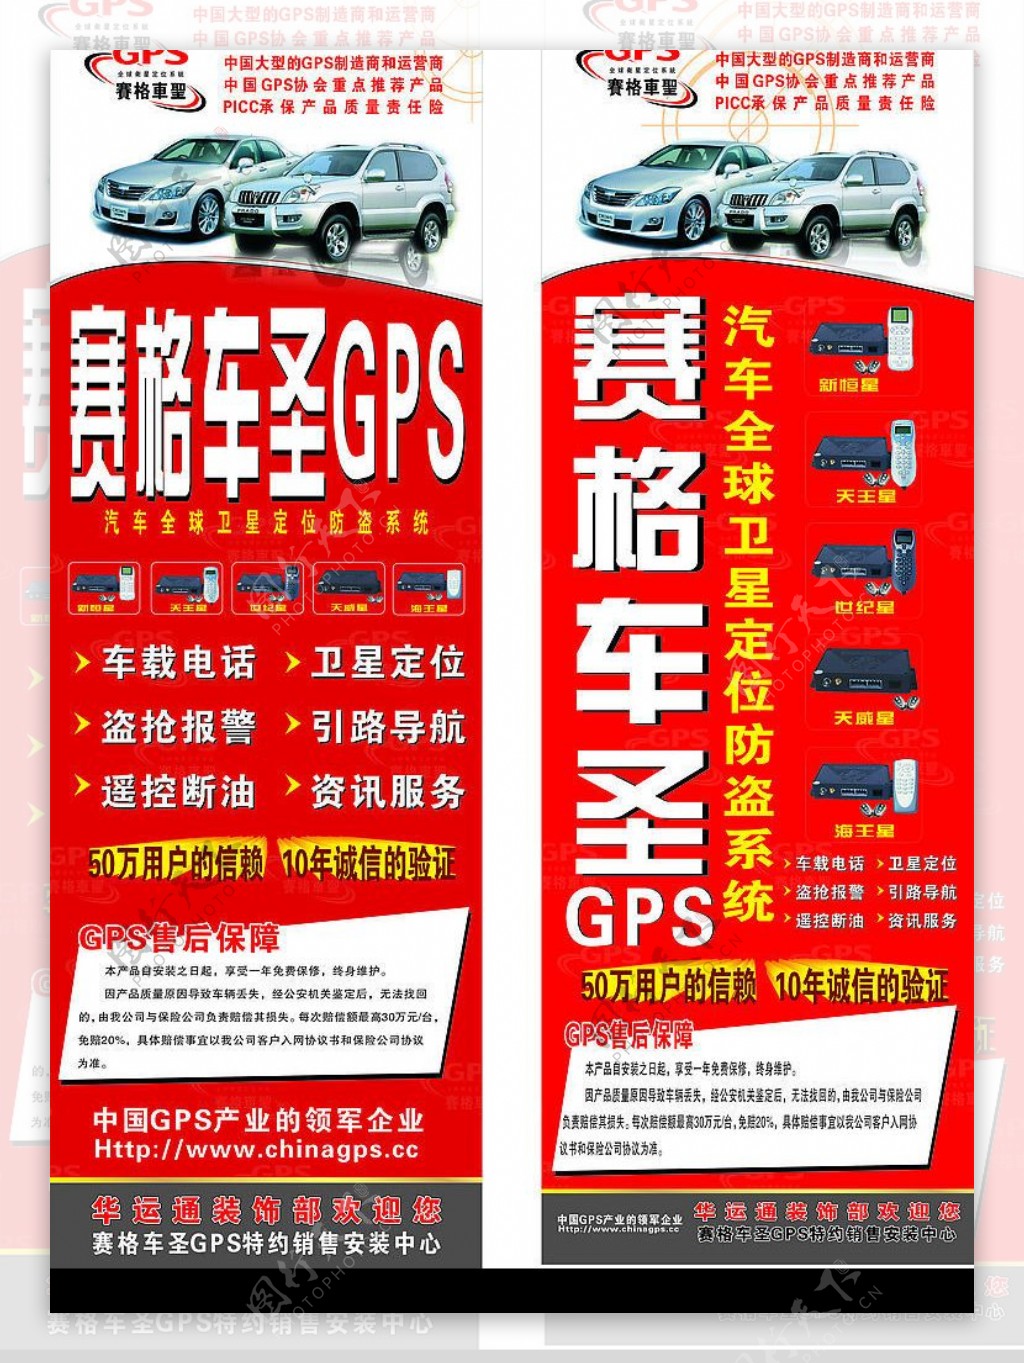 塞格车圣GPS广告